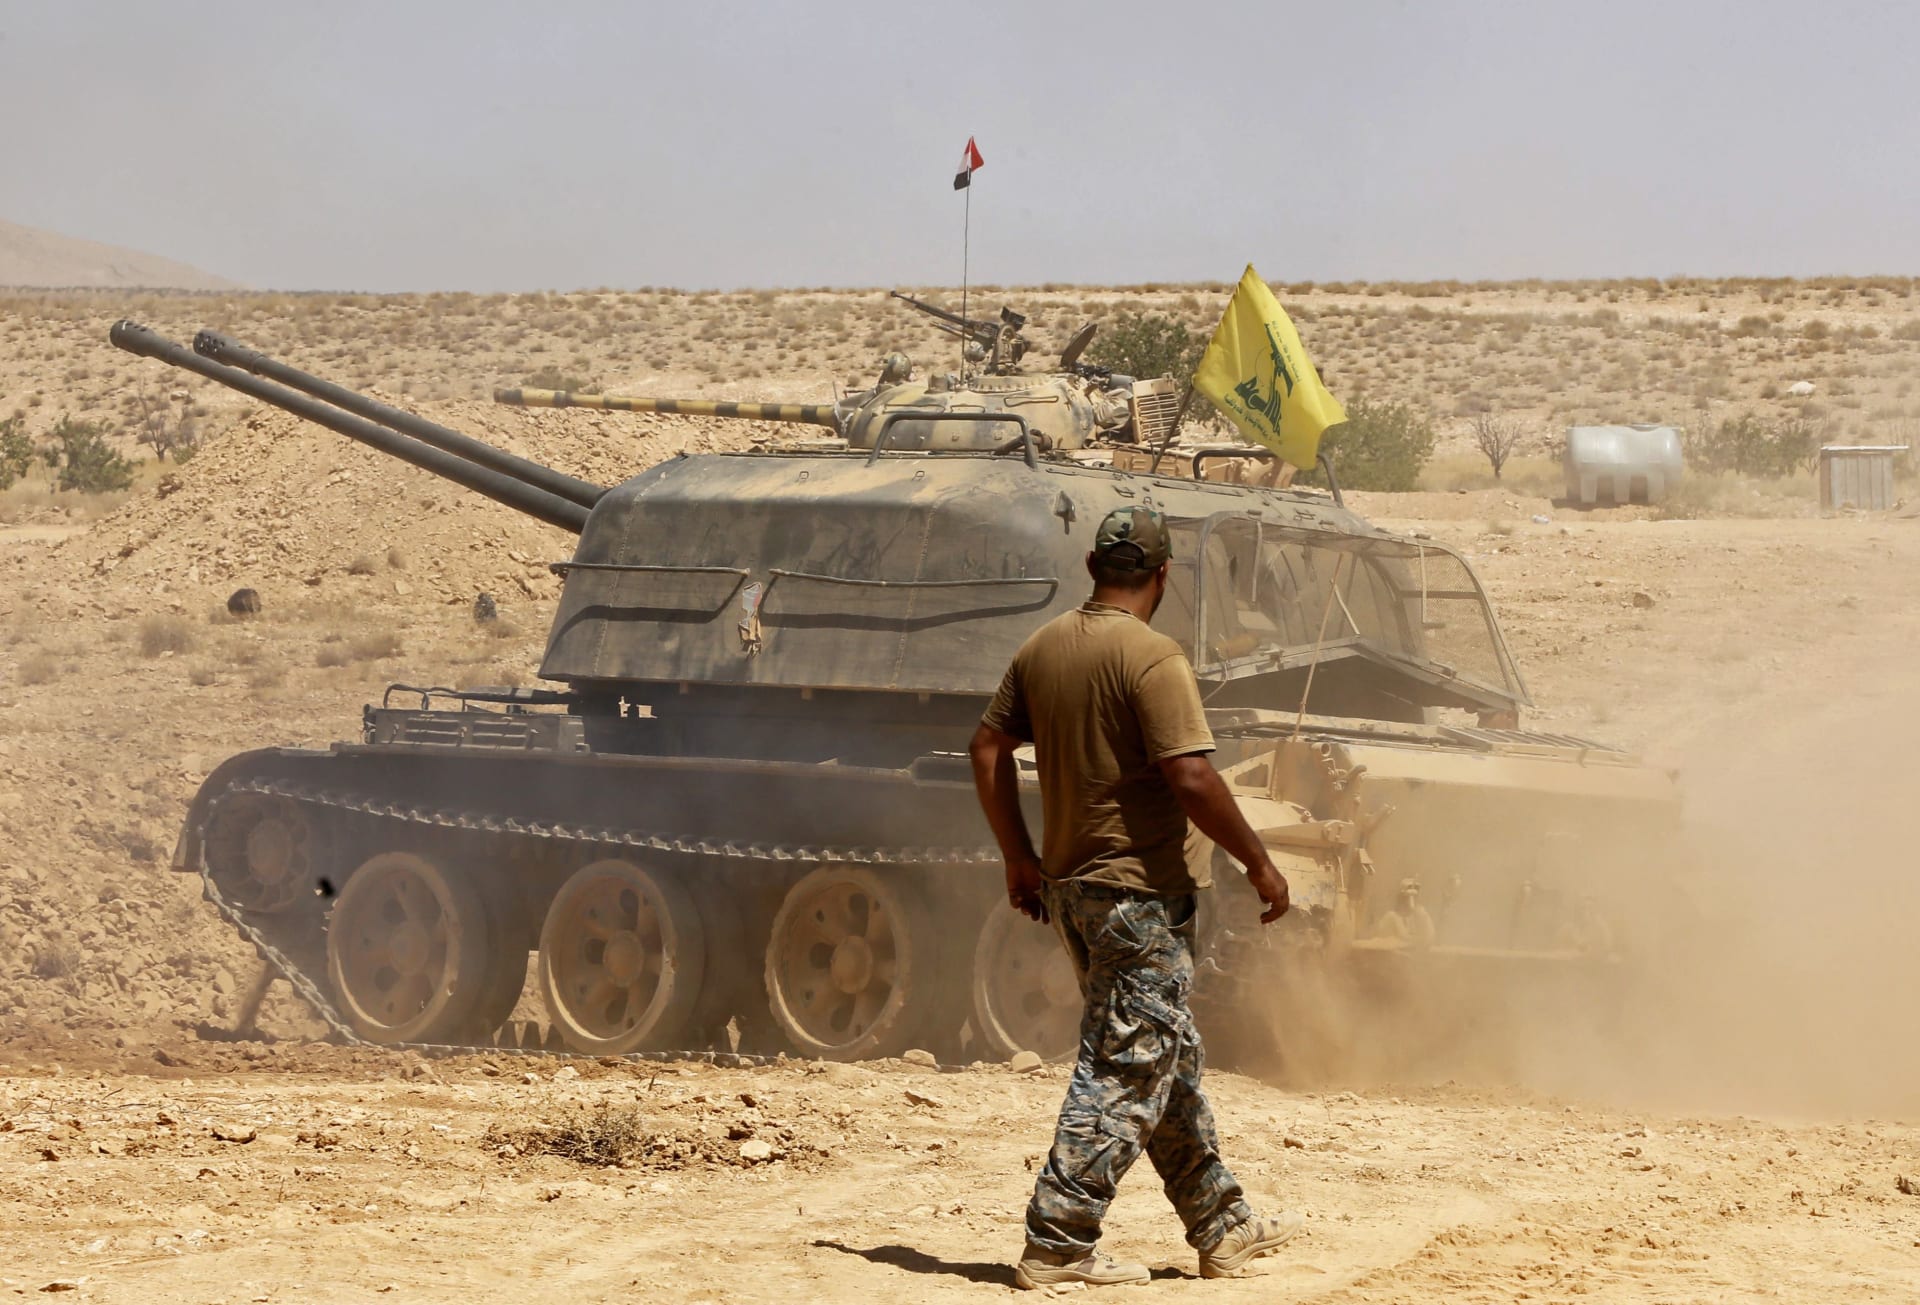 الحرس الثوري: داعش سلم سلطات سوريا 3 جثامين بينهم جندي إيراني ضمن الاتفاق مع حزب الله 